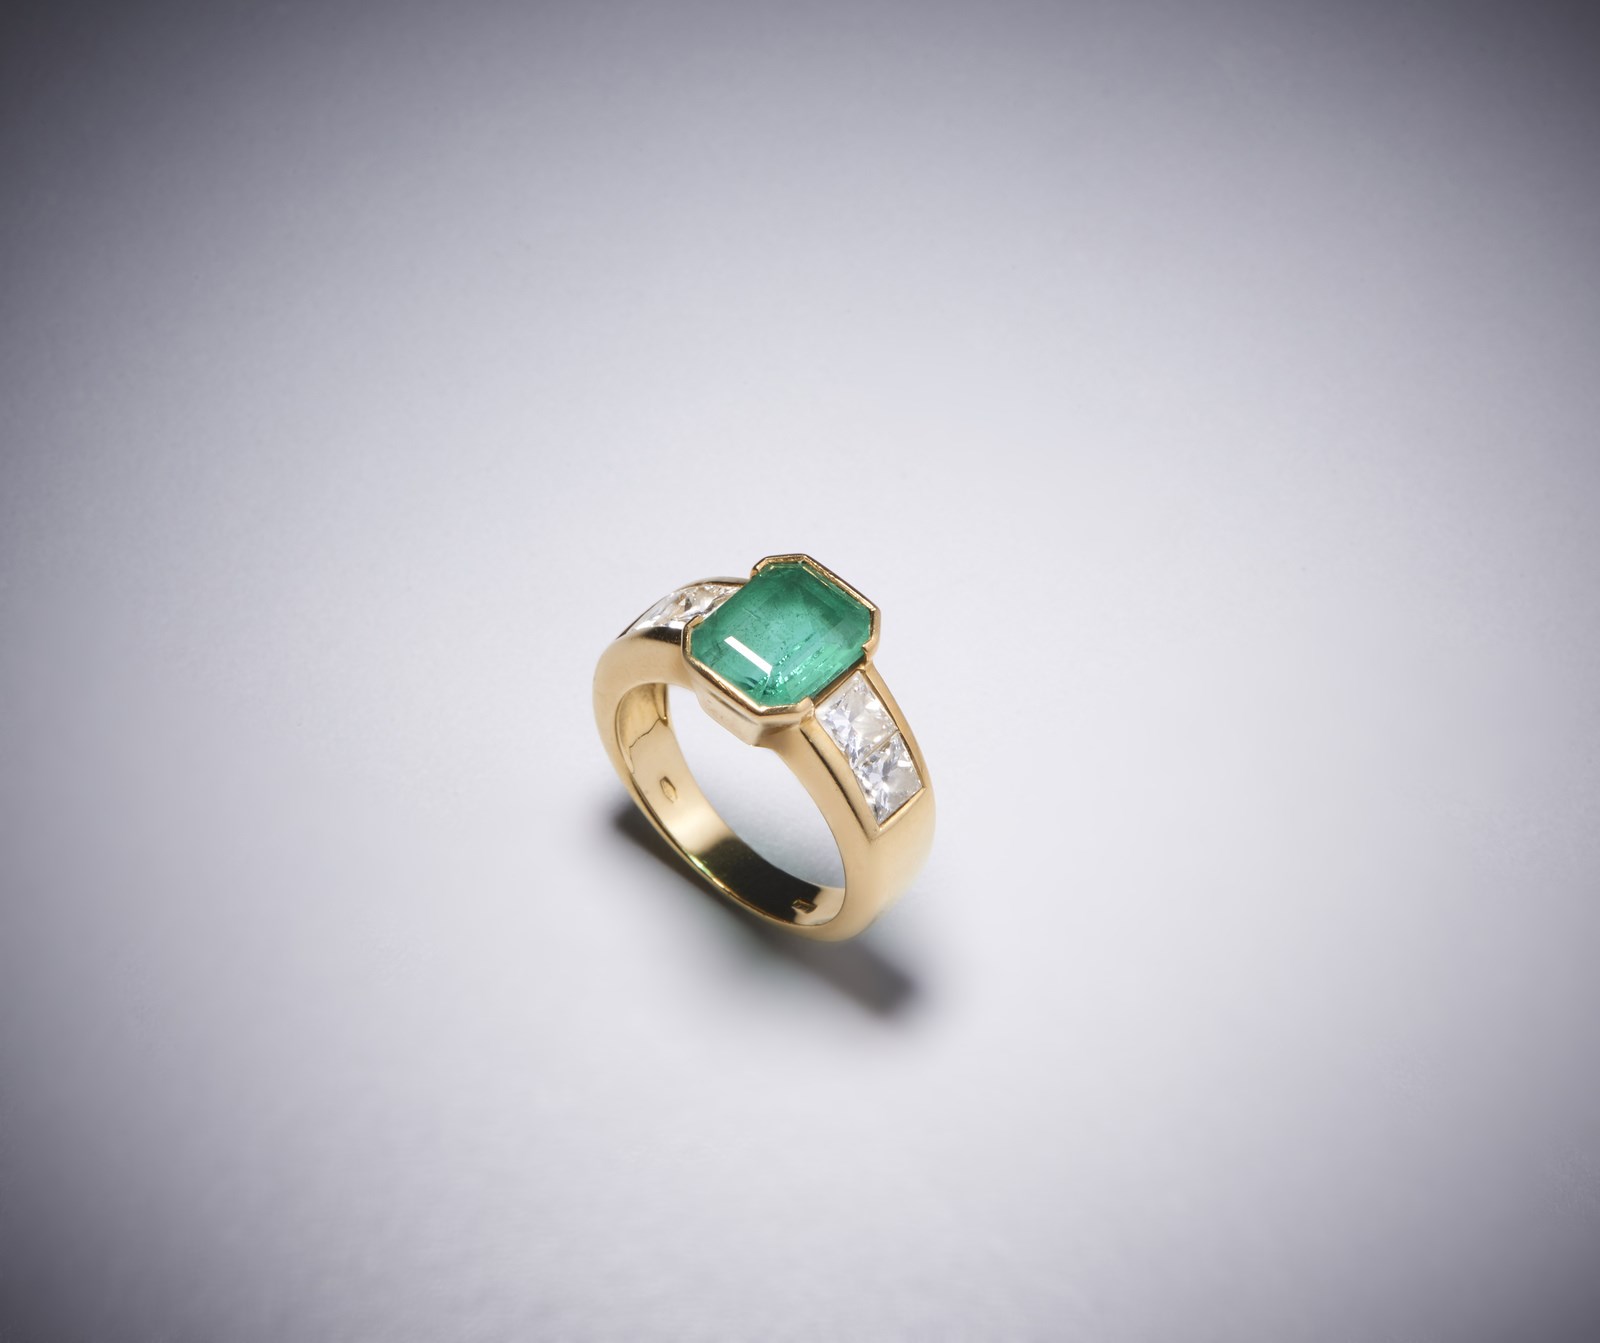 Un anello in oro giallo 750/1000 con smeraldo colombiano centrale ct 2,50 con contorno di diamanti bianchi  taglio princess, 1,30 ct.circa. (. )